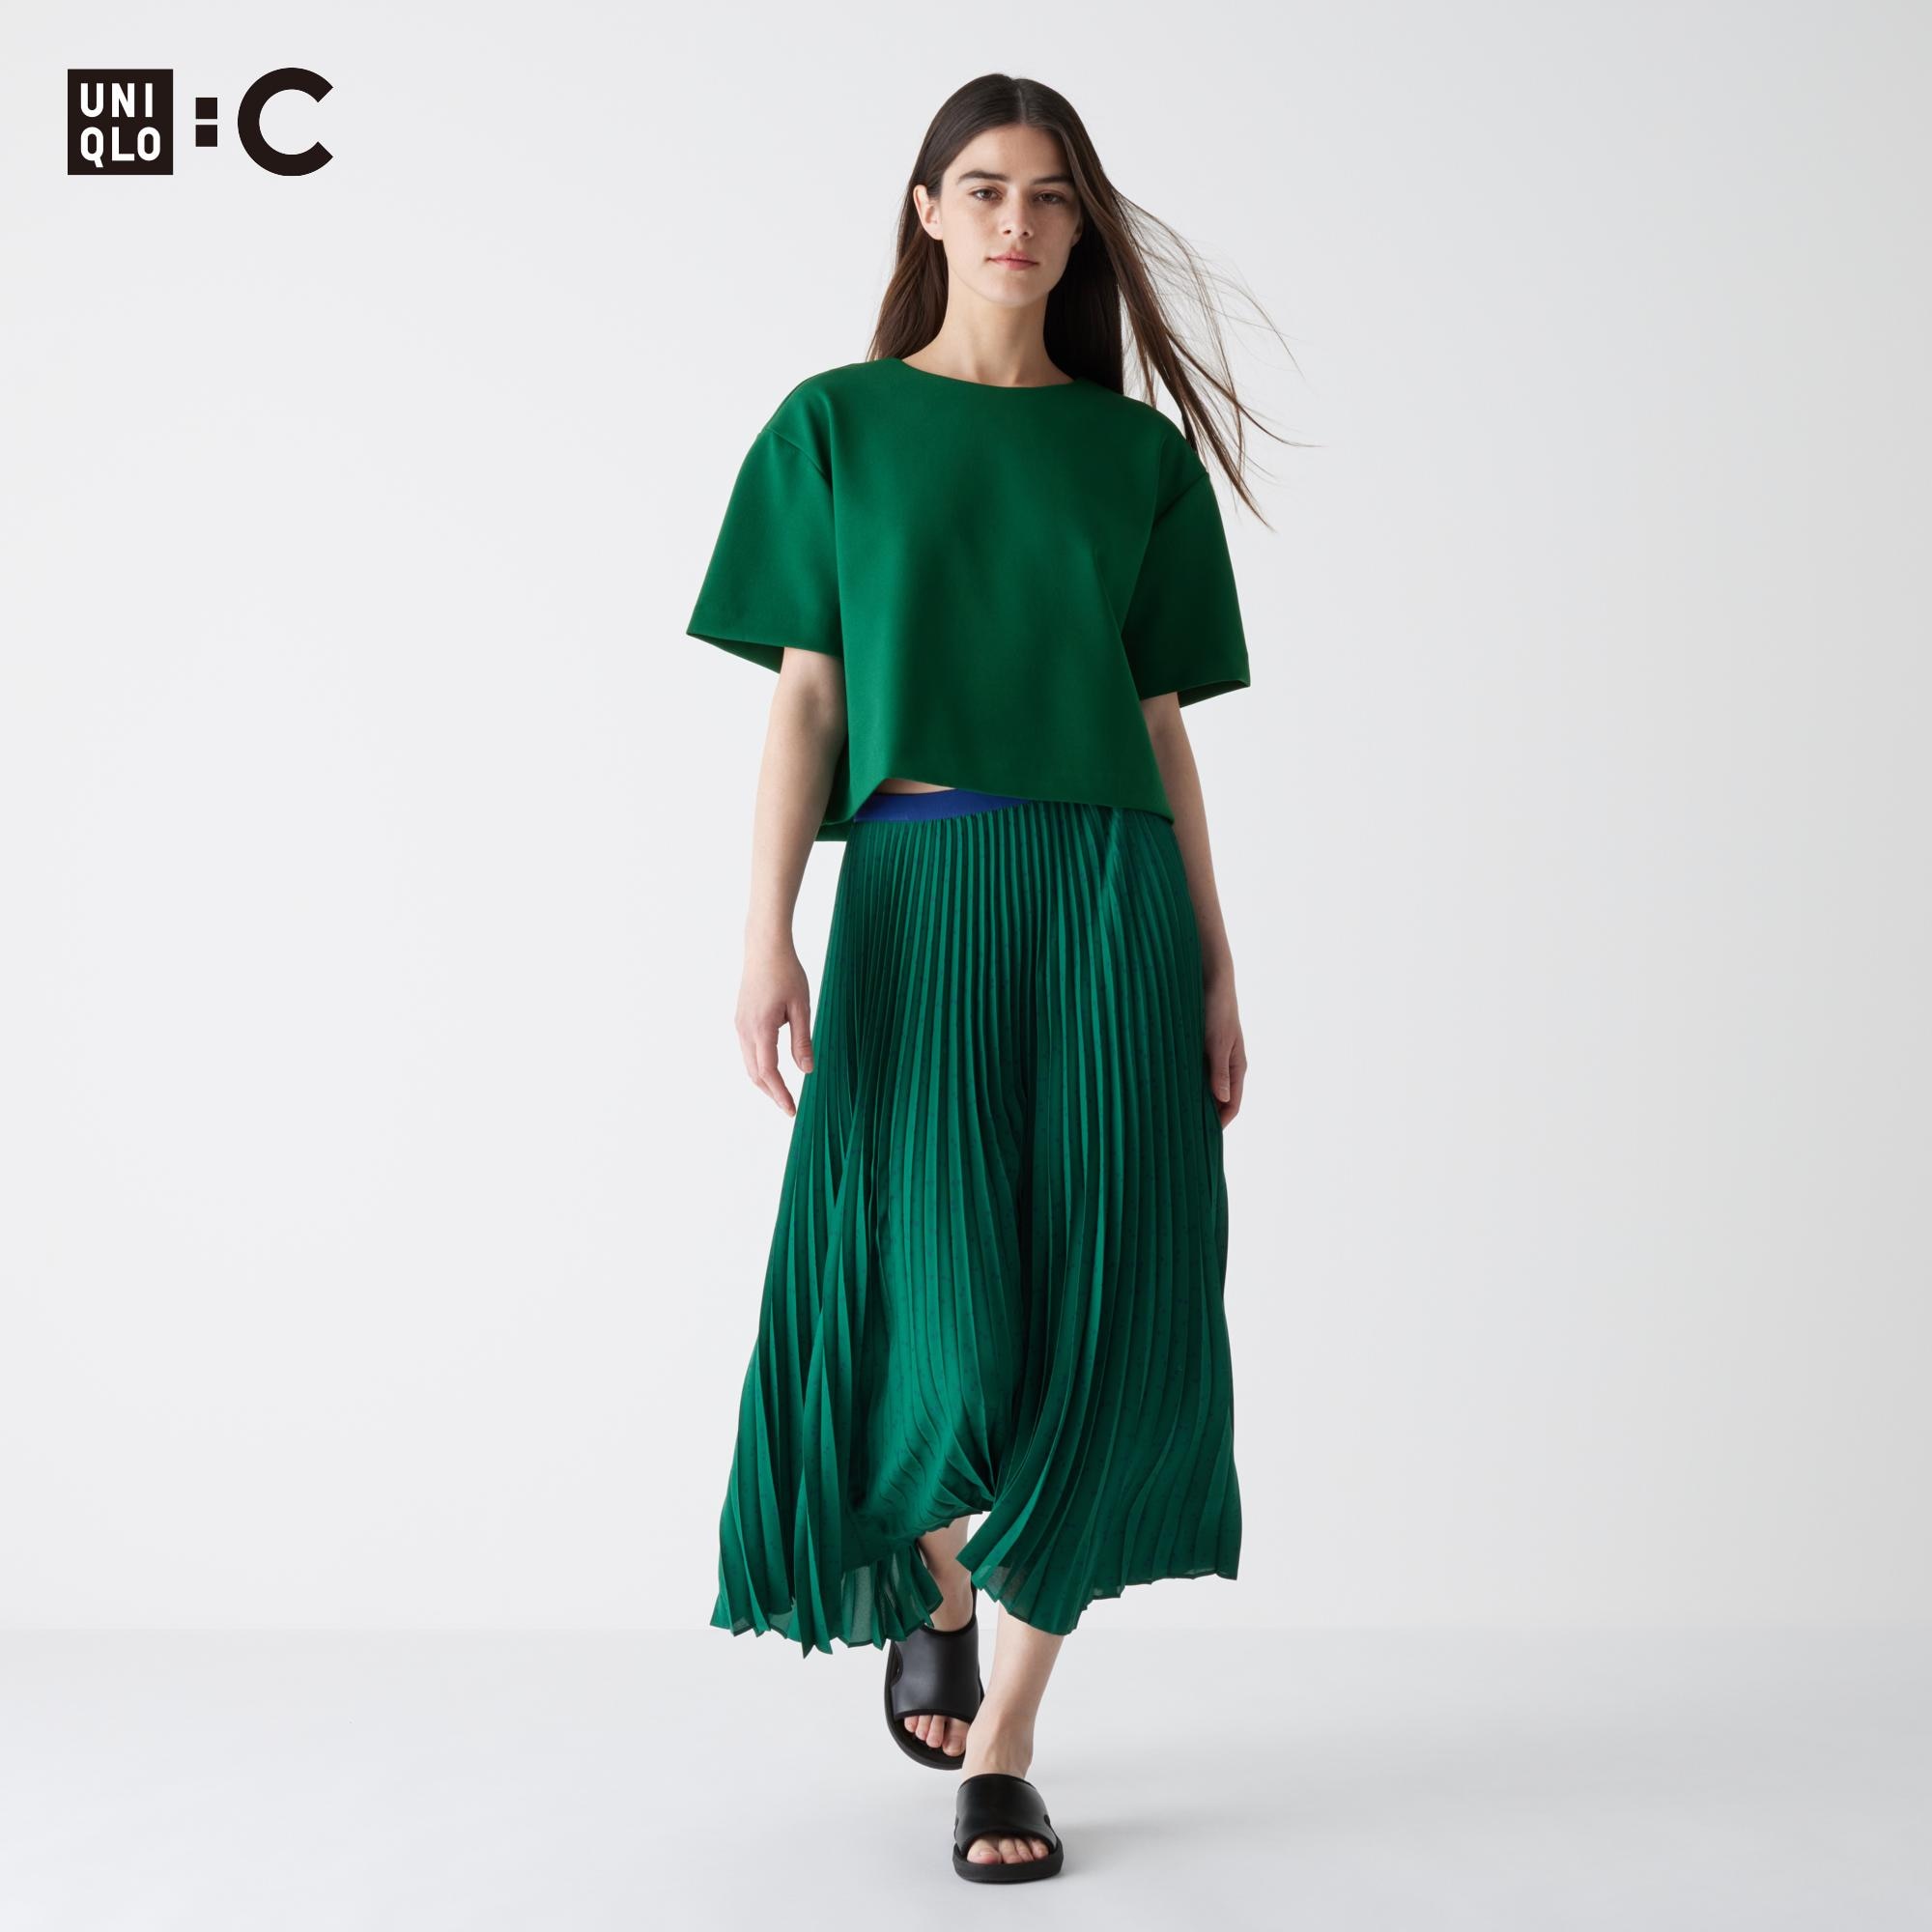 台形スカート 大きいサイズの関連商品 | ユニクロ